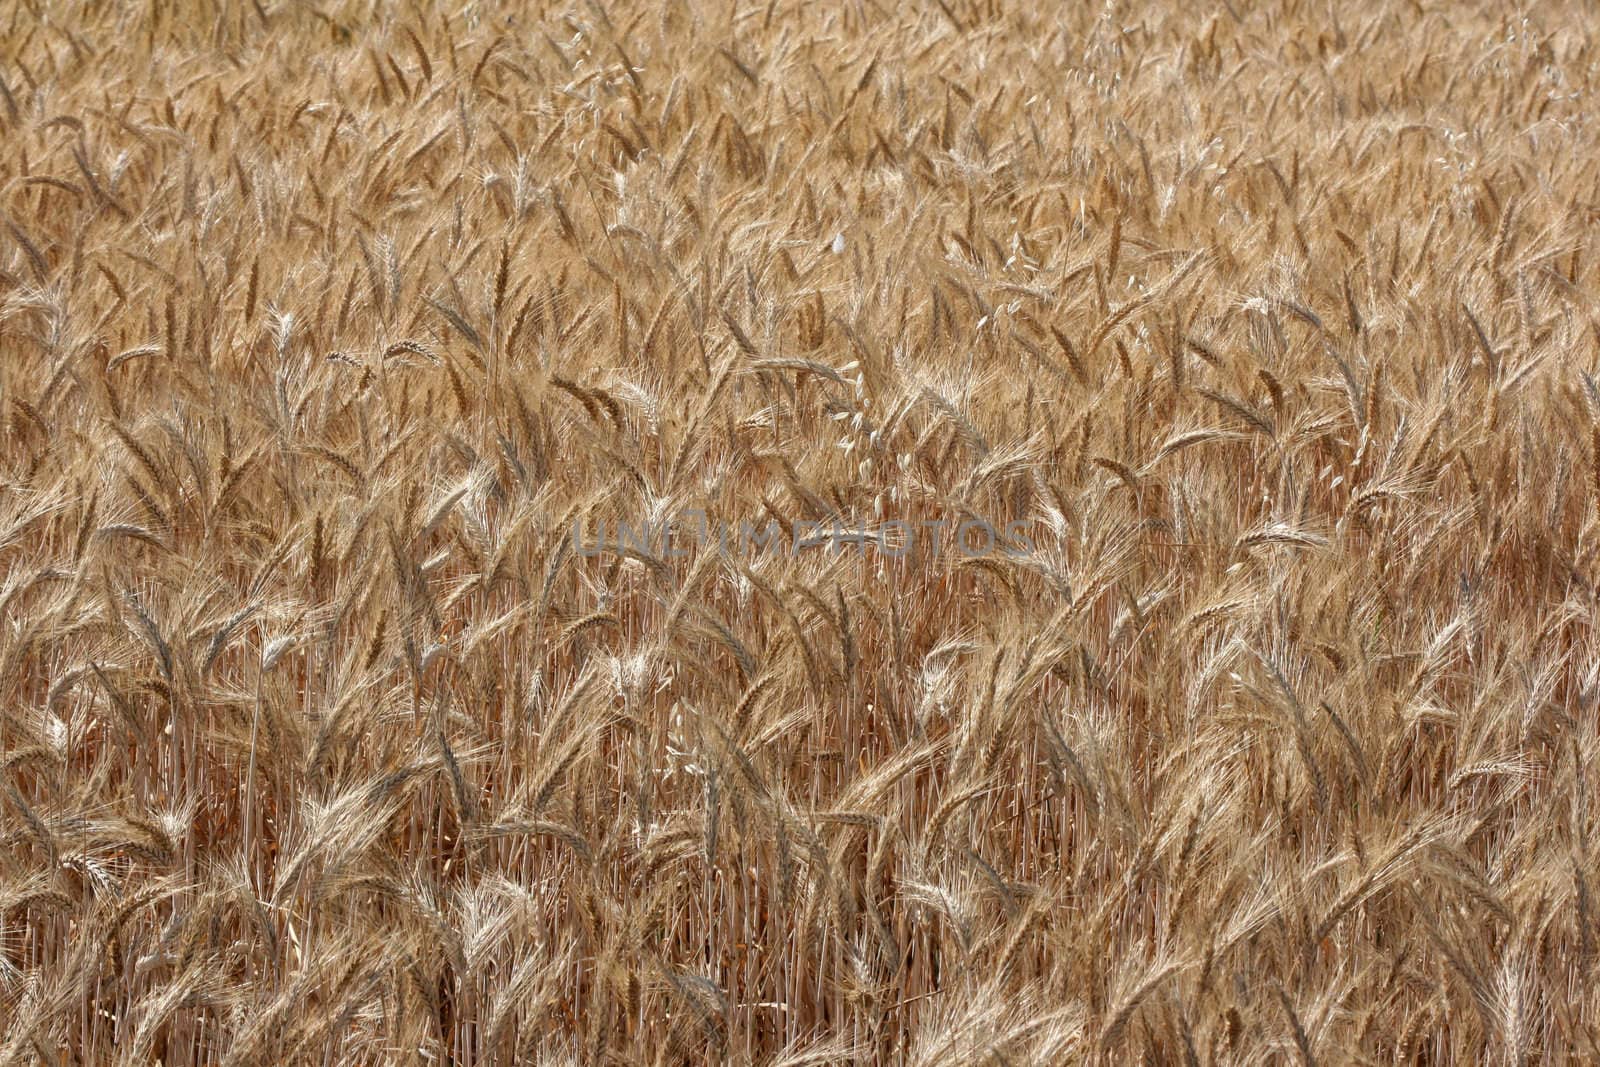 Wheatfields by zebra31